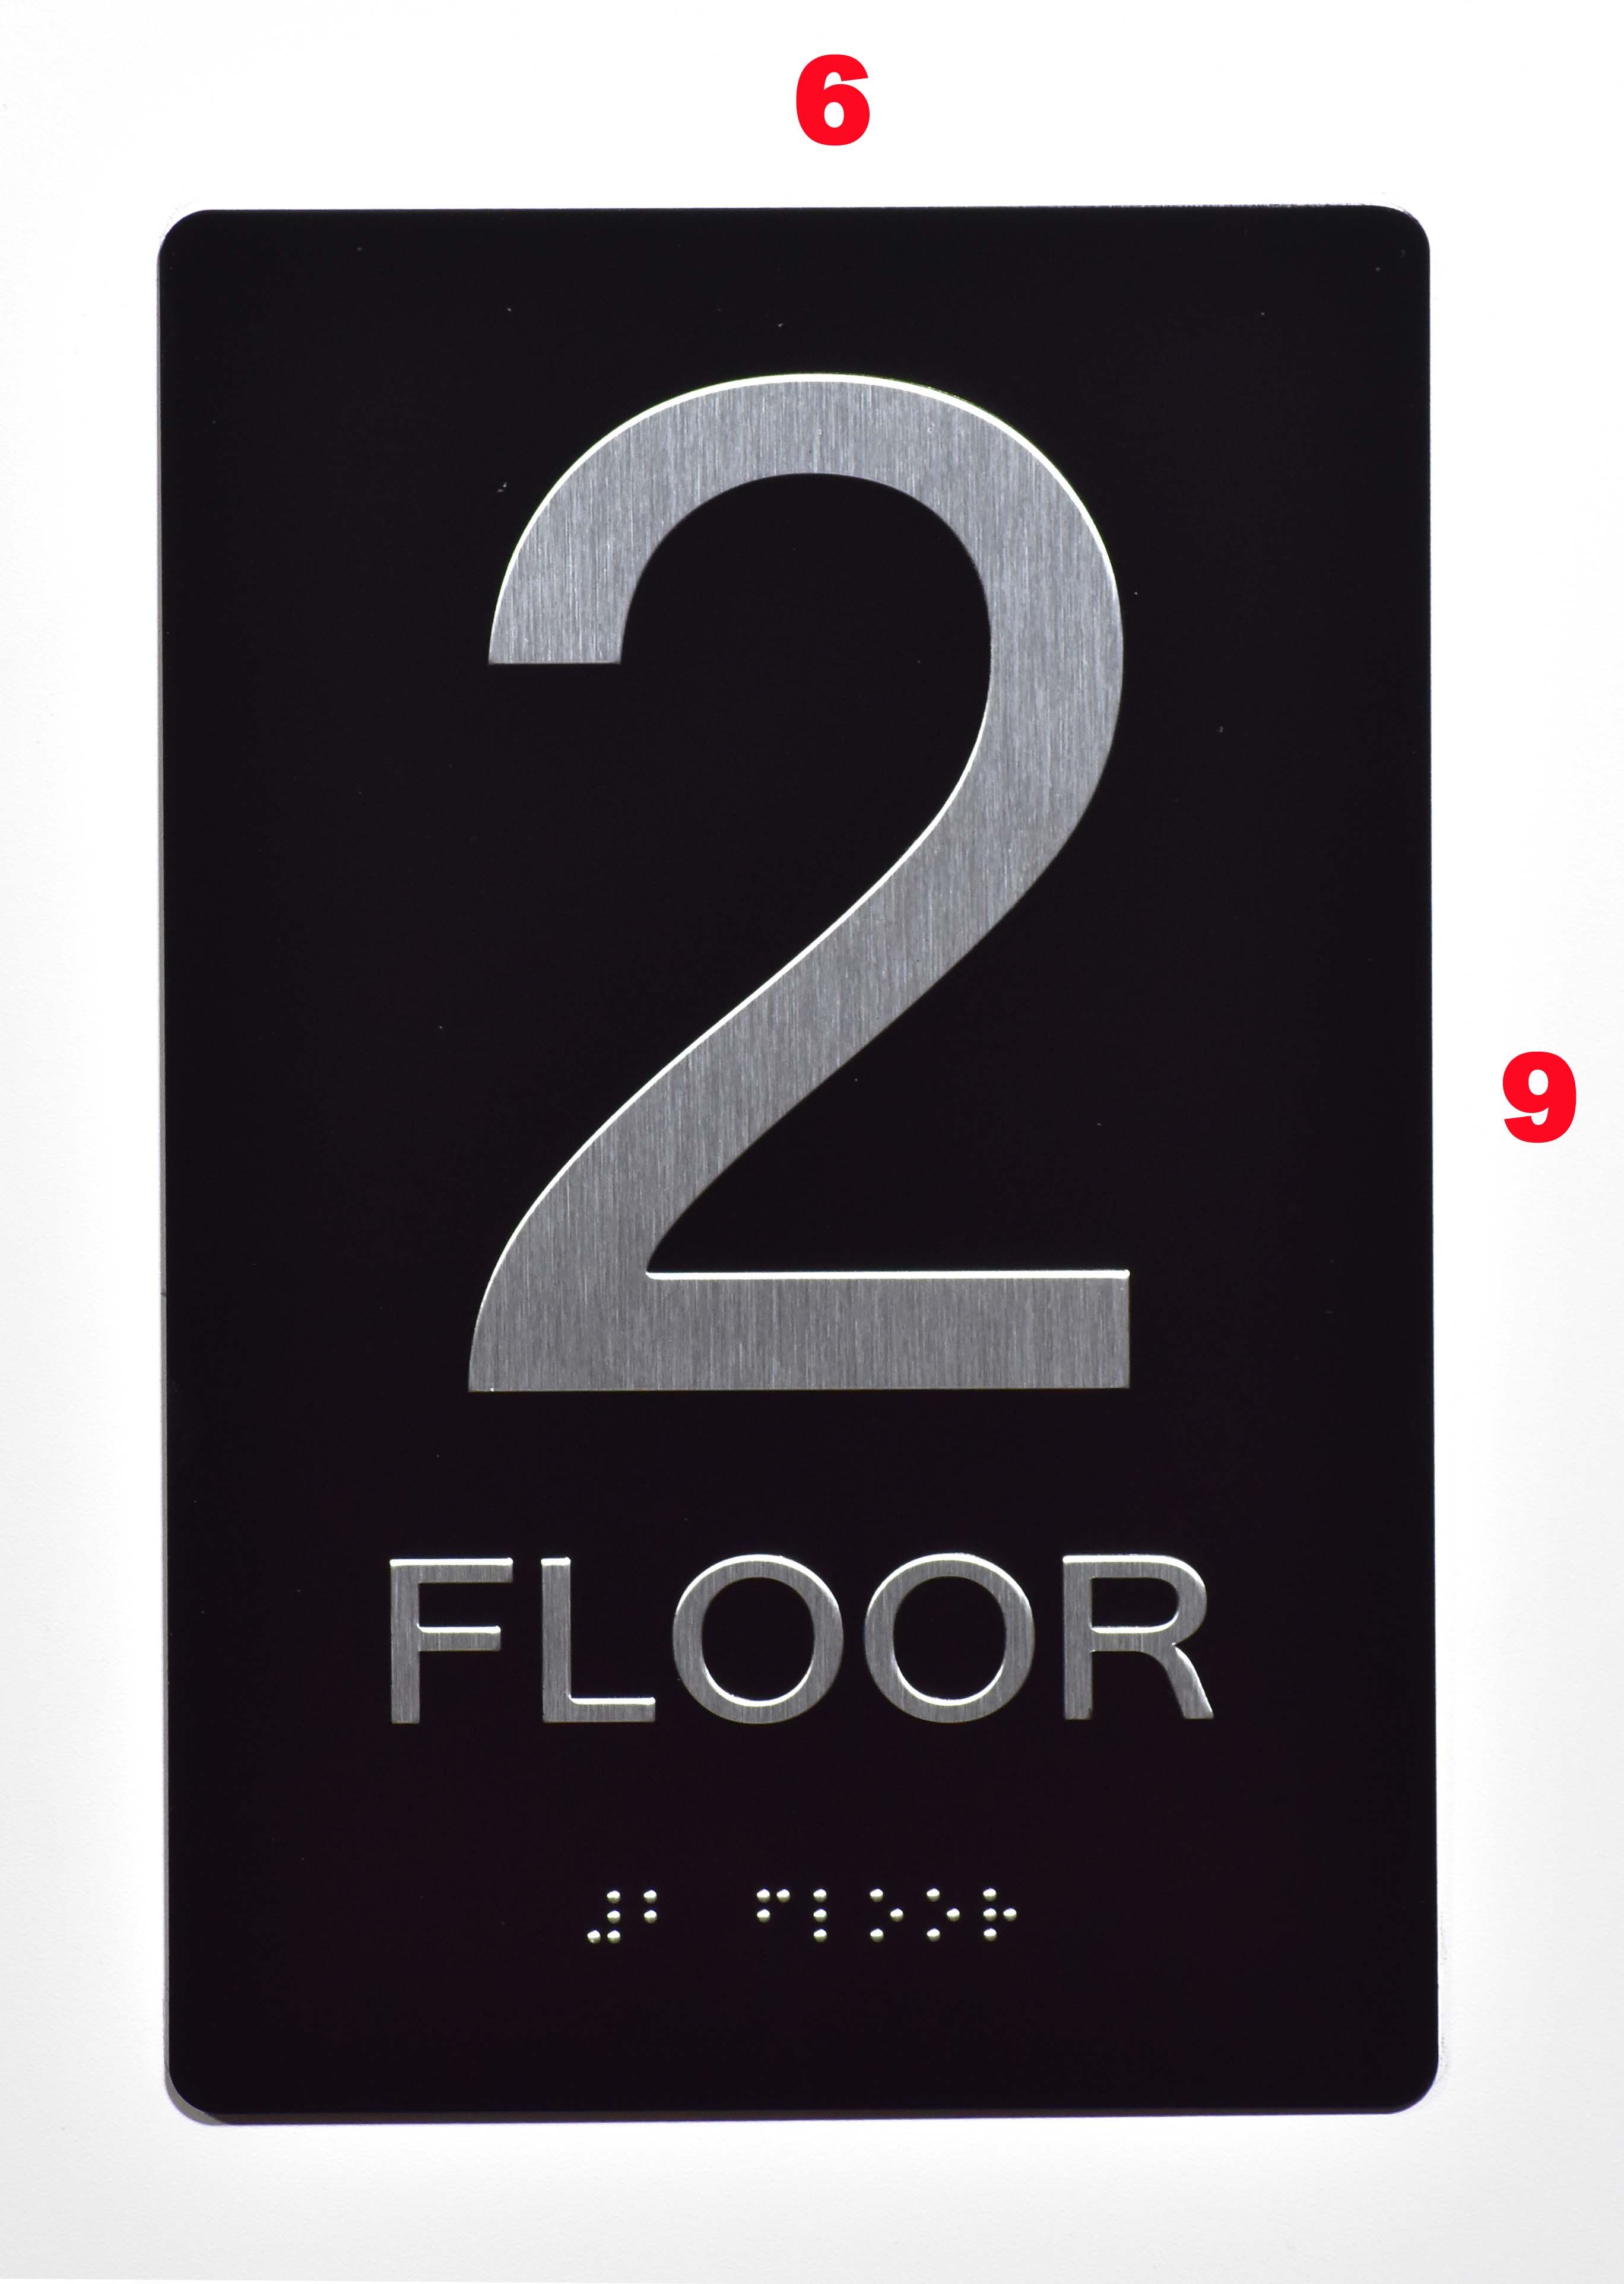 Number of floors. 2nd Floor знак. Floor(число). 2 Floor sign. Number Floor 2b.